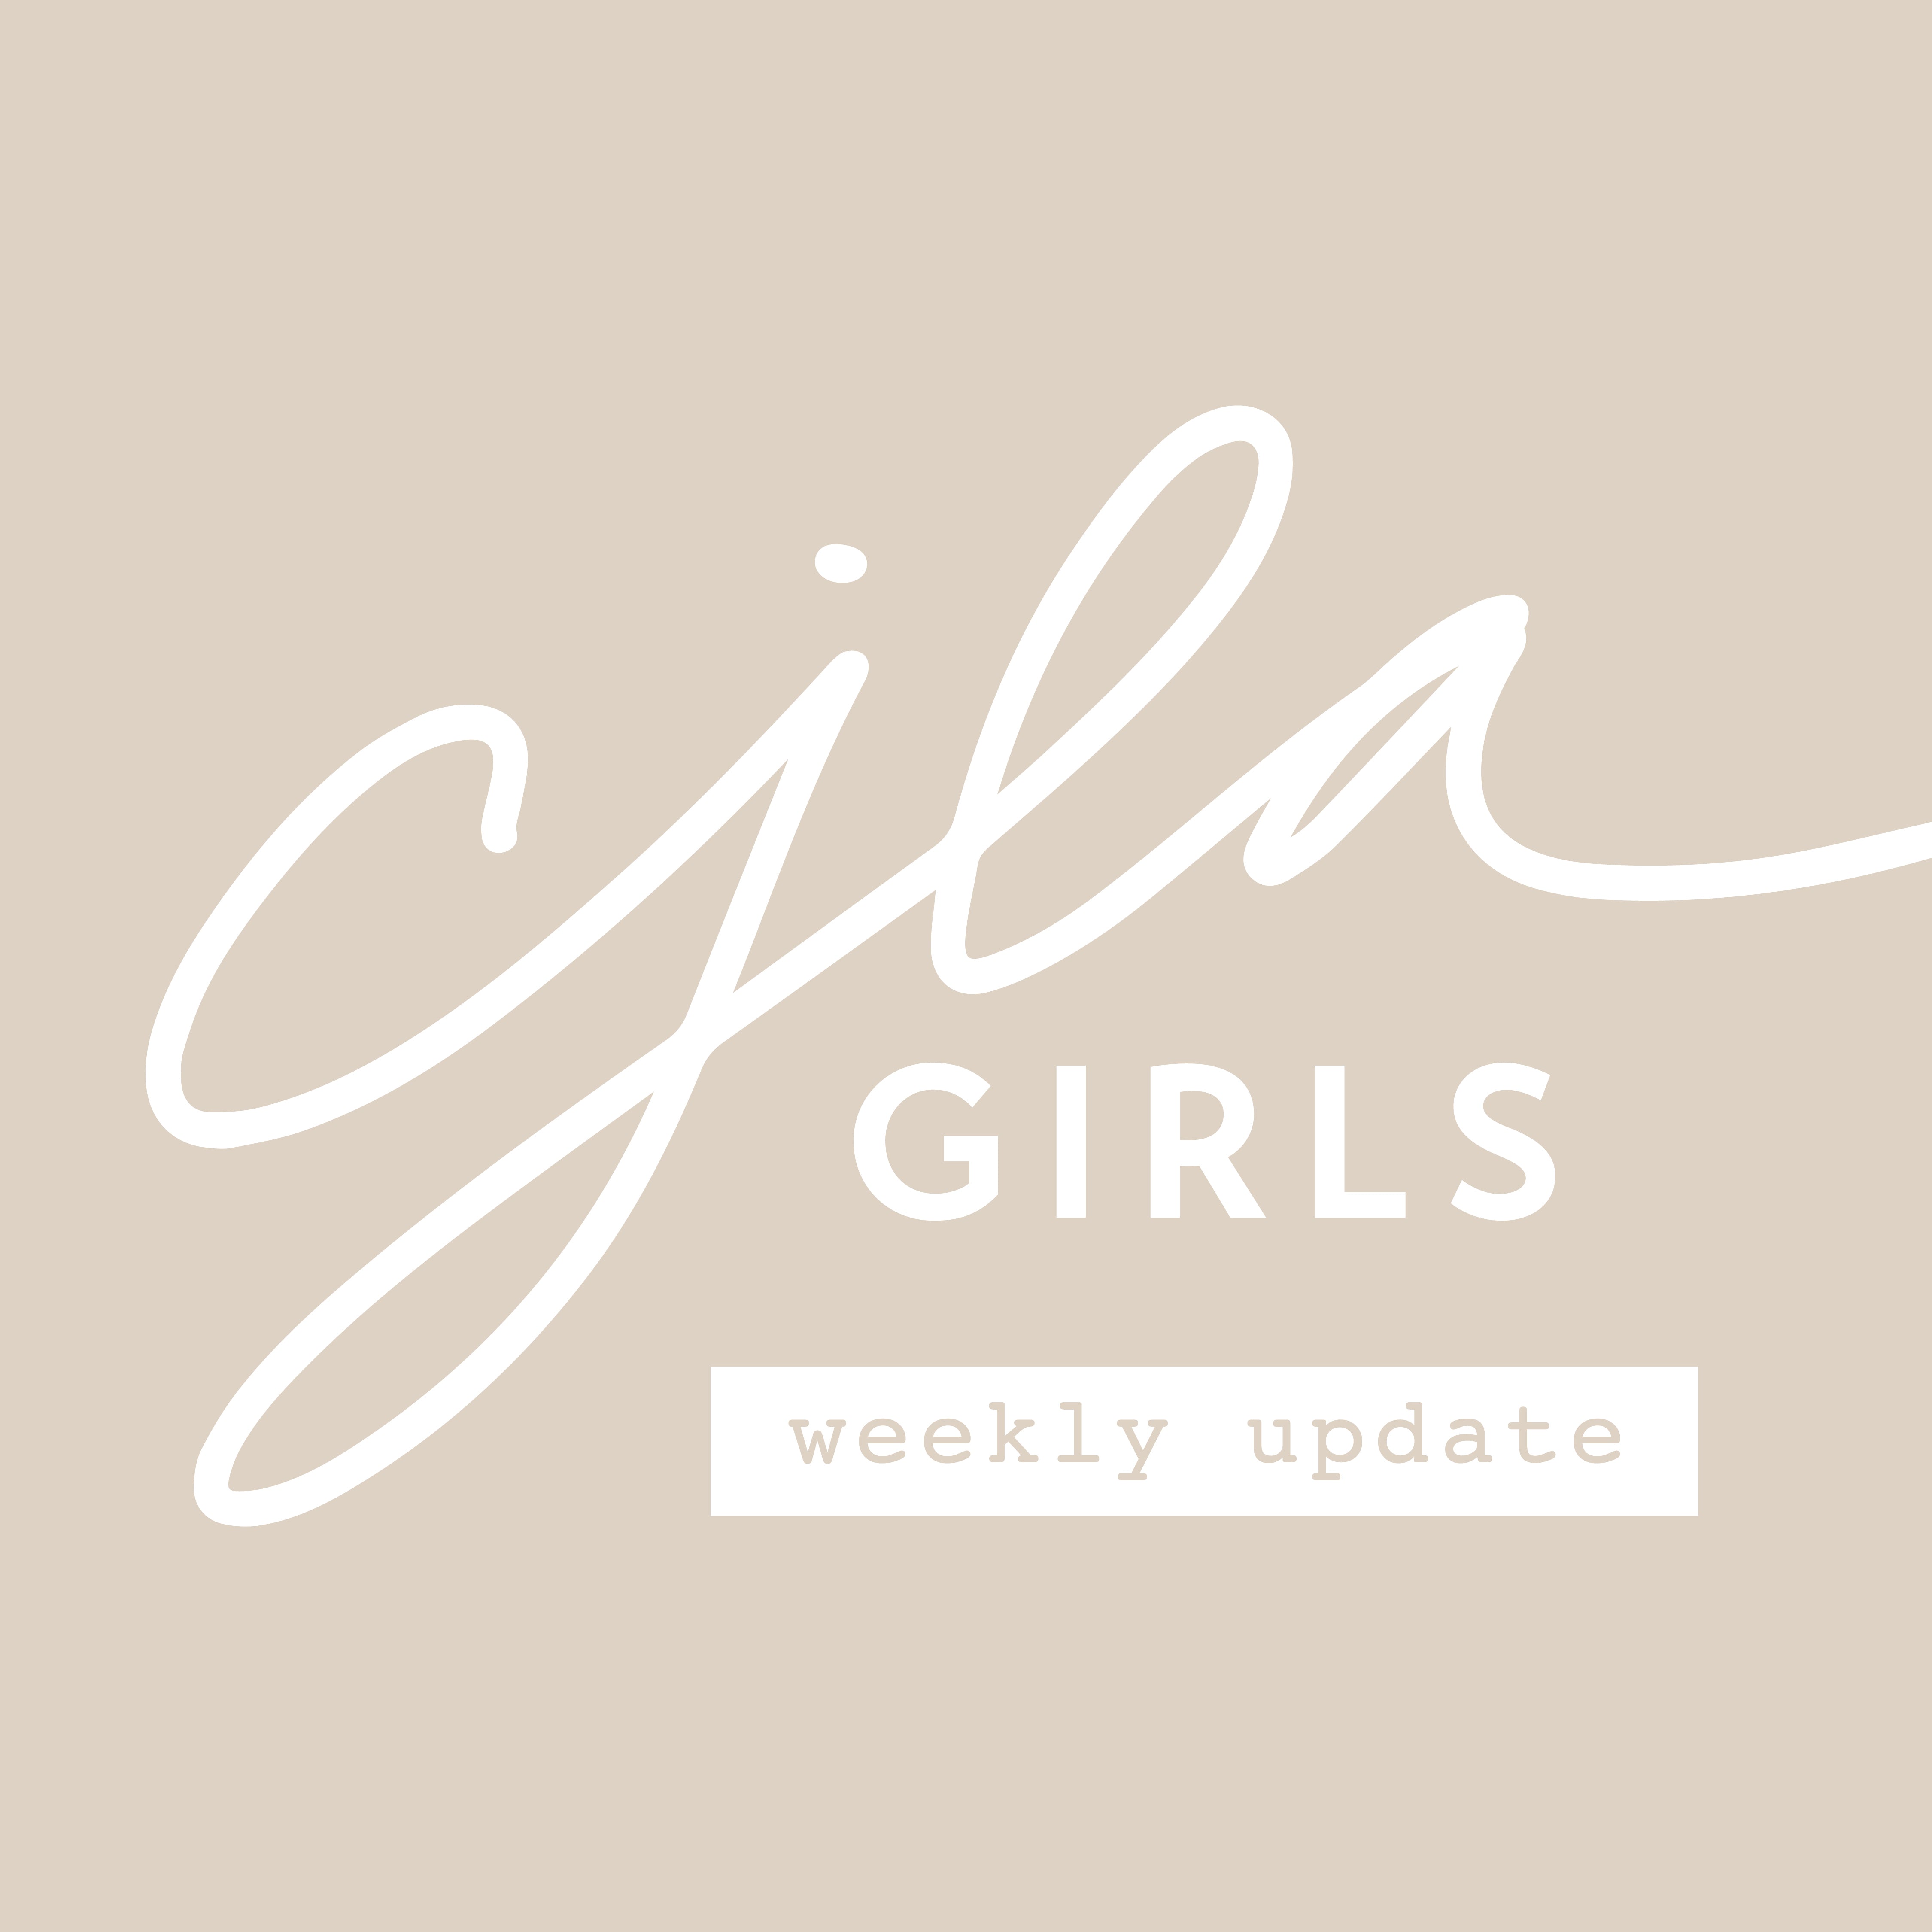 CJLA Girls Weekly Update: May 4-9